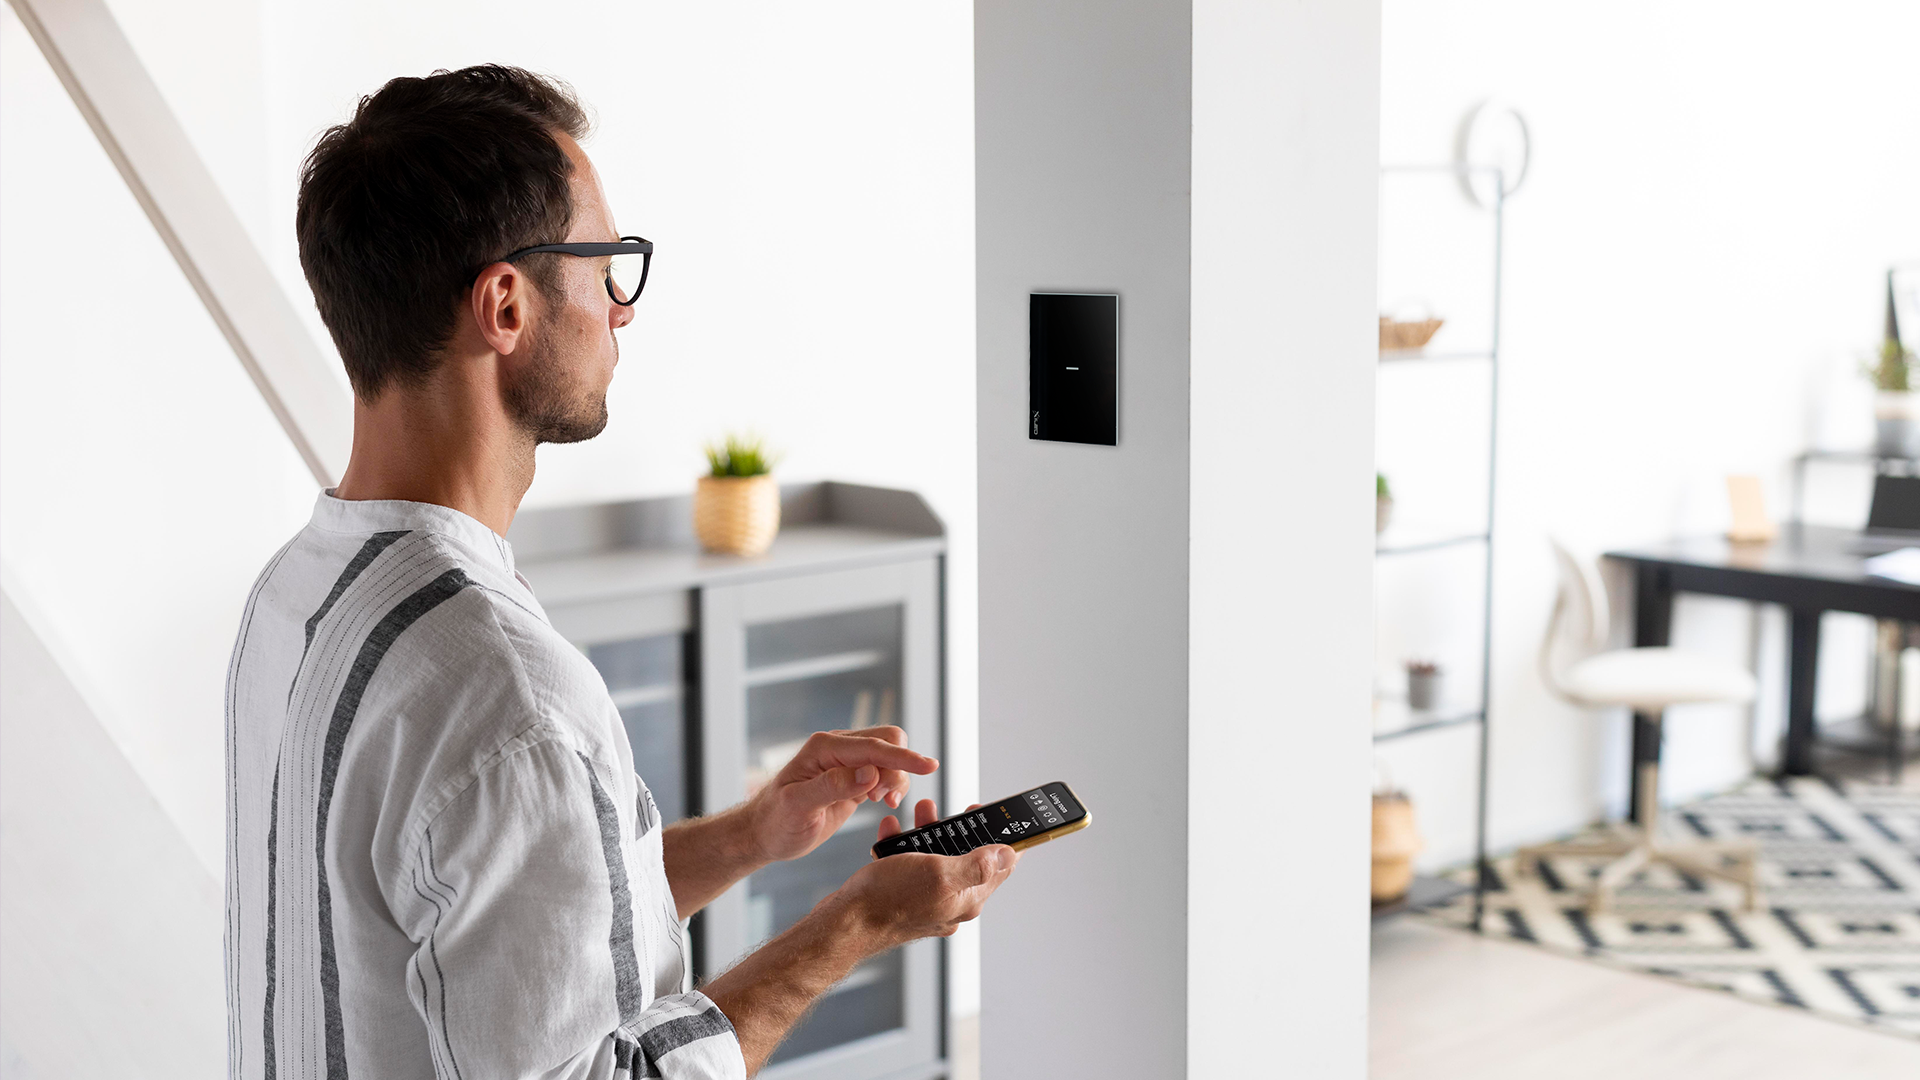 Instalación domótica con Alexa para tu smart home - Si Smart